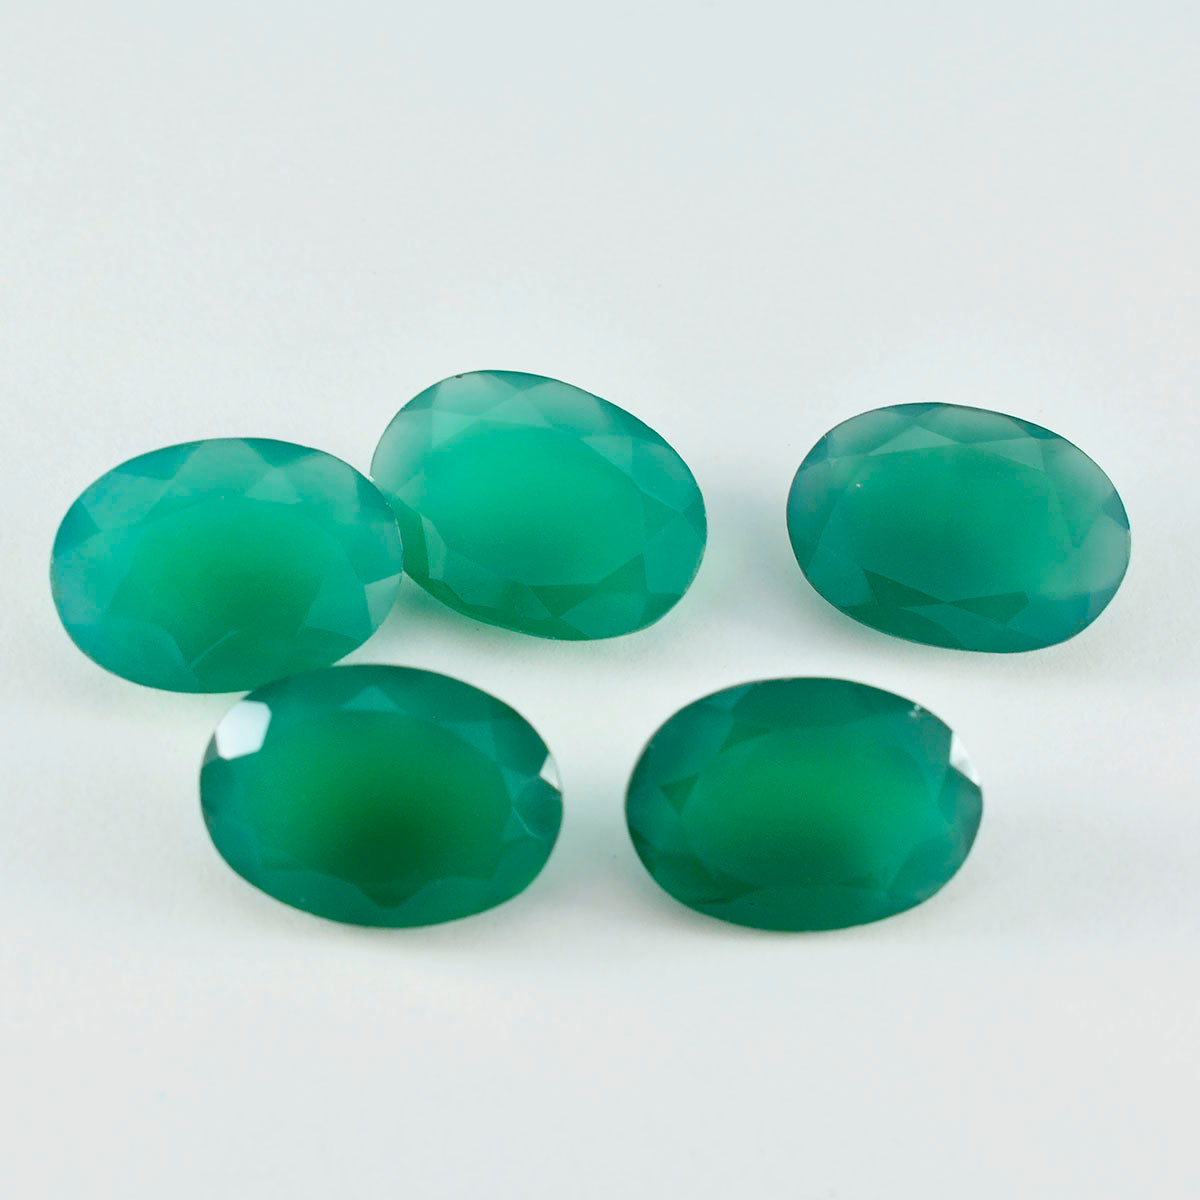 Riyogems 1pc onyx vert naturel à facettes 10x14mm forme ovale merveilleuse qualité gemme en vrac